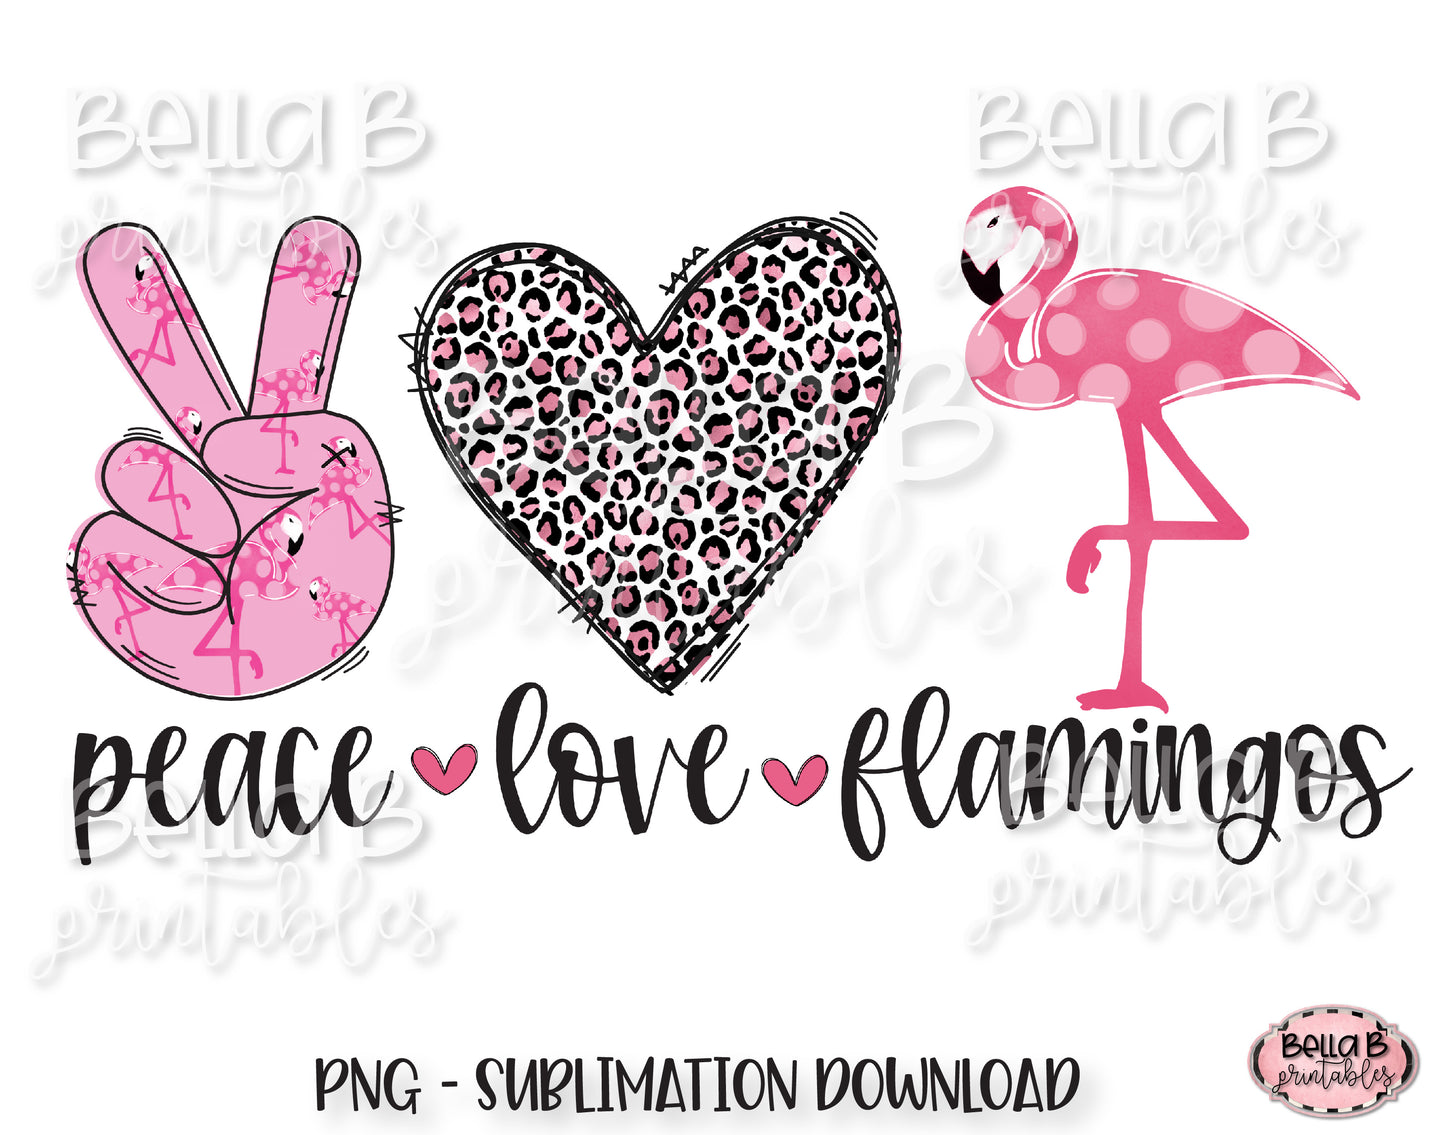 Peace Love Flamingos Sublimation Design